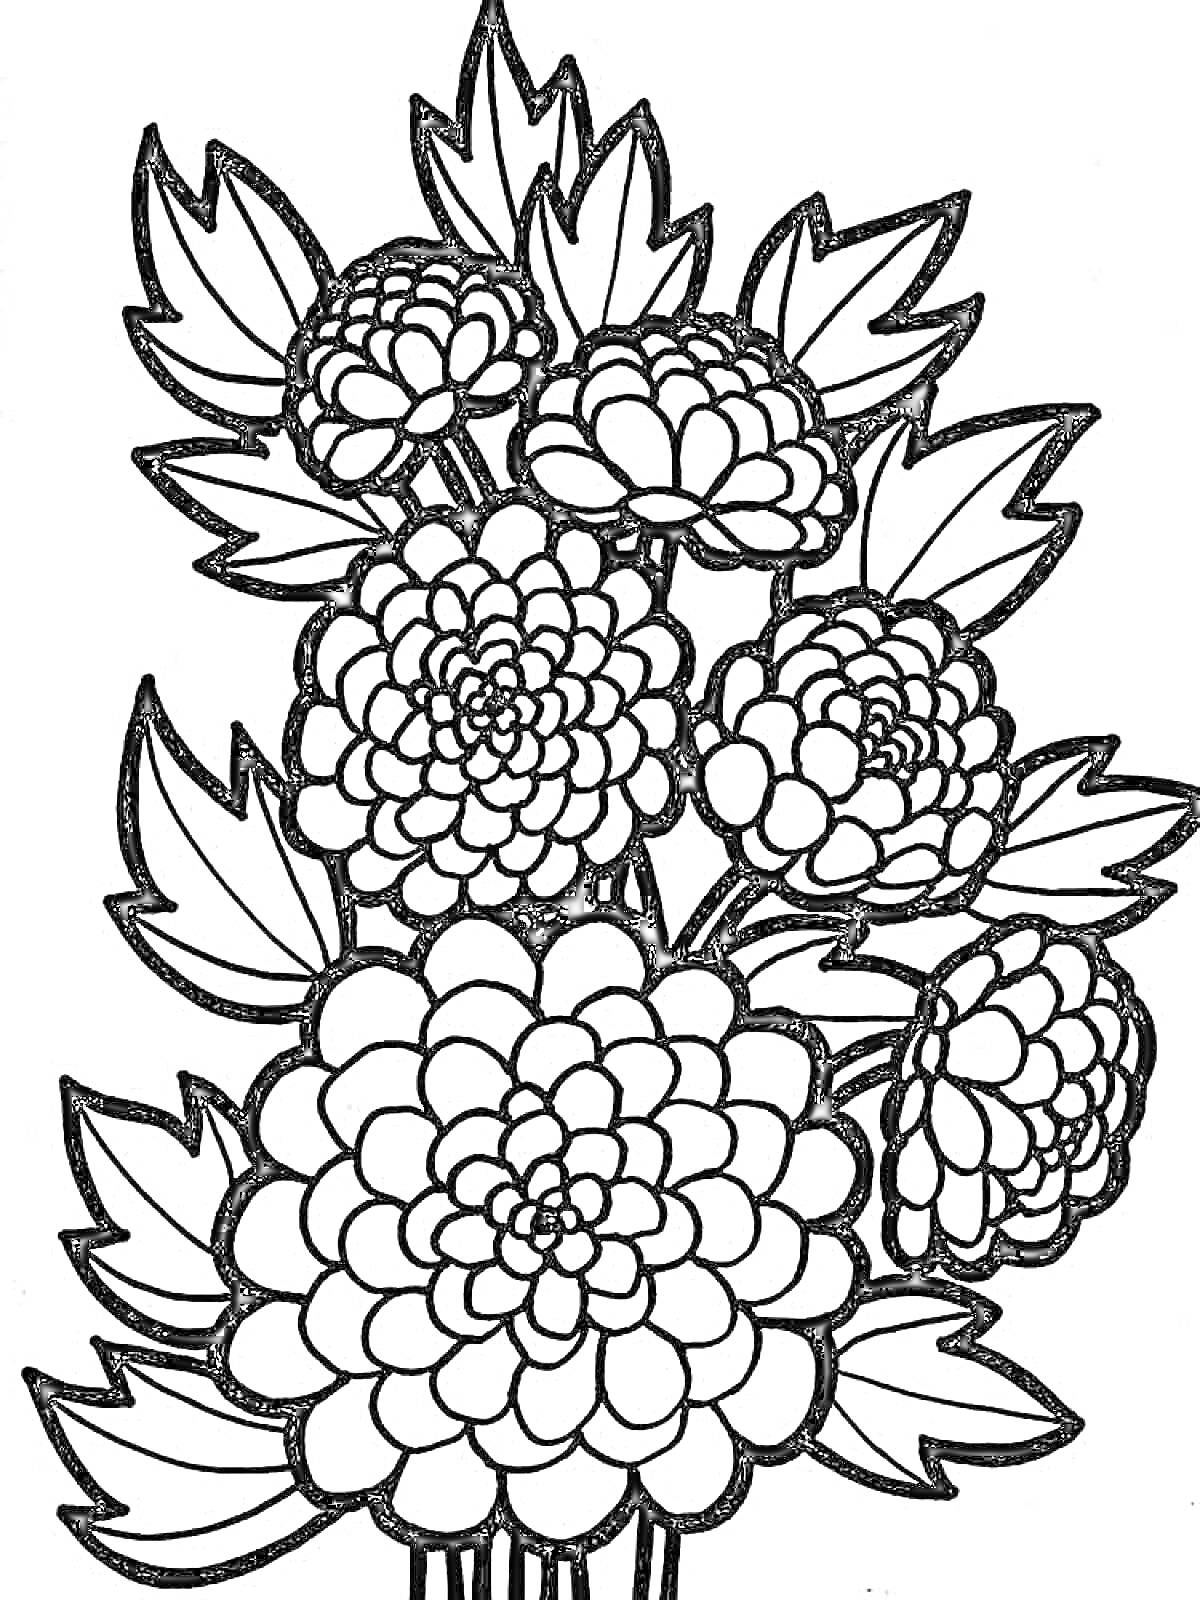 Рисунок с хризантемами, состоящий из нескольких цветов с детализированными лепестками и листьями